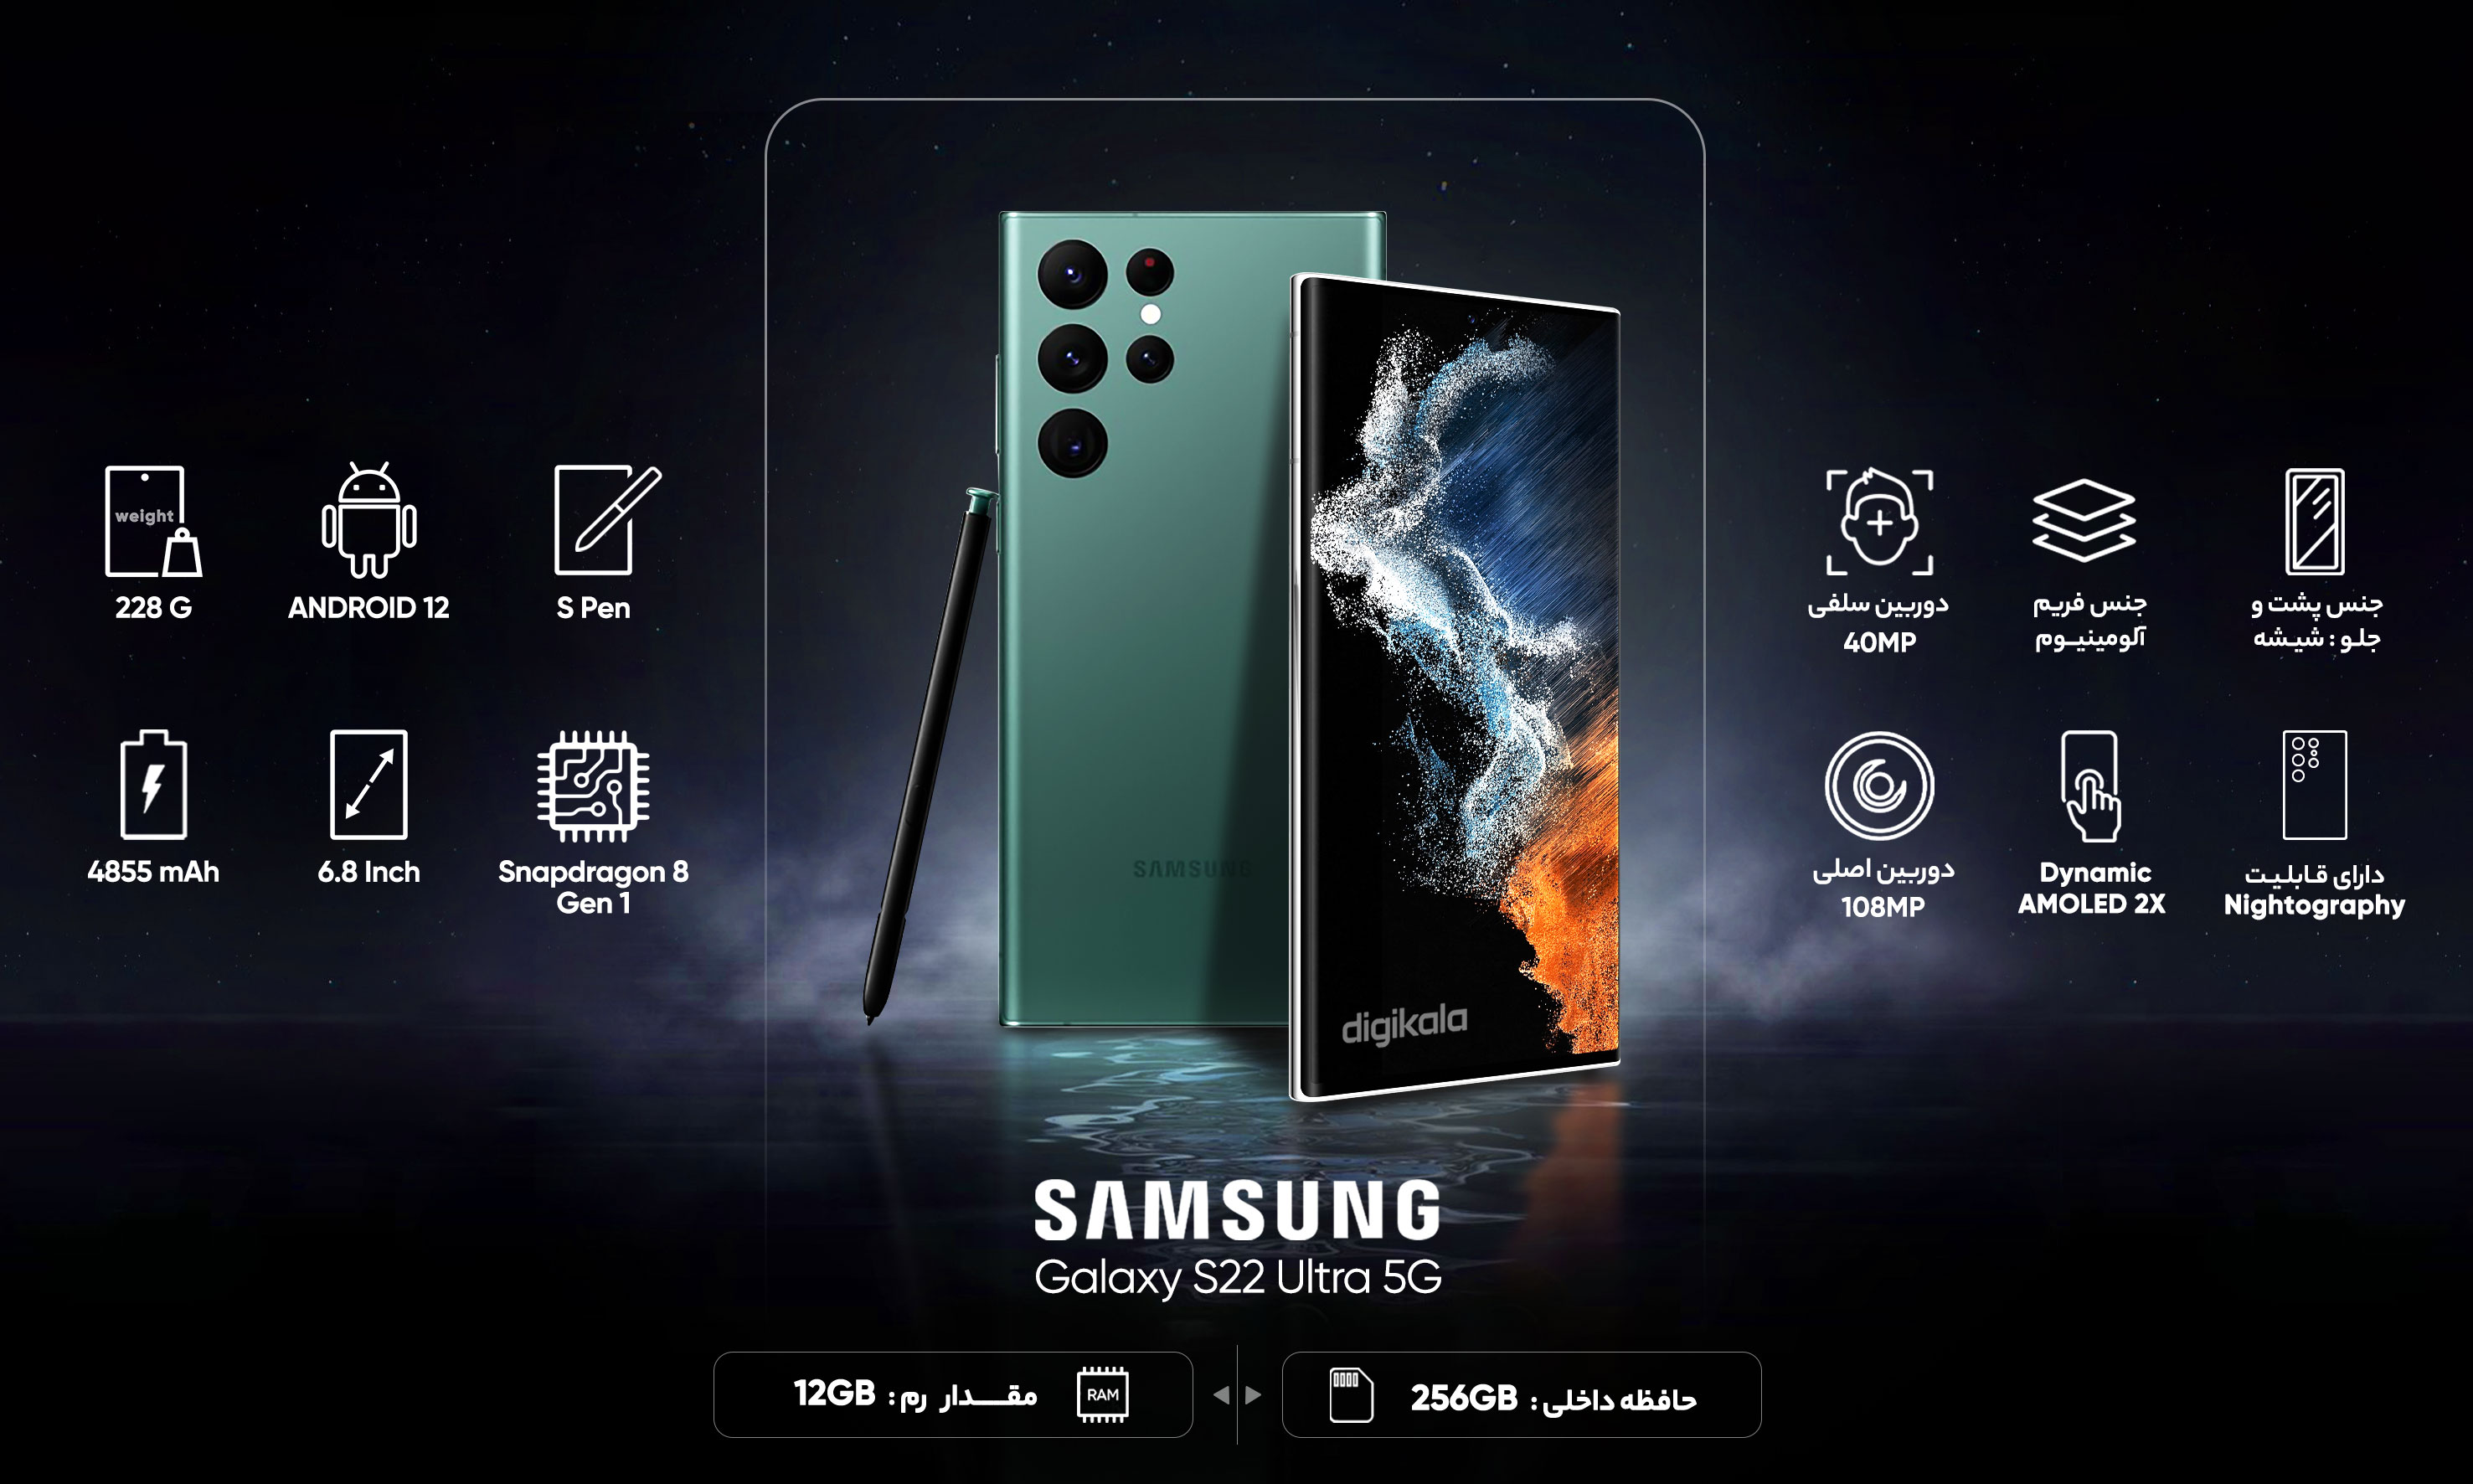 گوشی موبایل سامسونگ مدل Galaxy S22 Ultra 5G دو سیم کارت ظرفیت 256 گیگابایت و رم 12 گیگابایت به همراه هدفون بی سیم Galaxy Buds 2